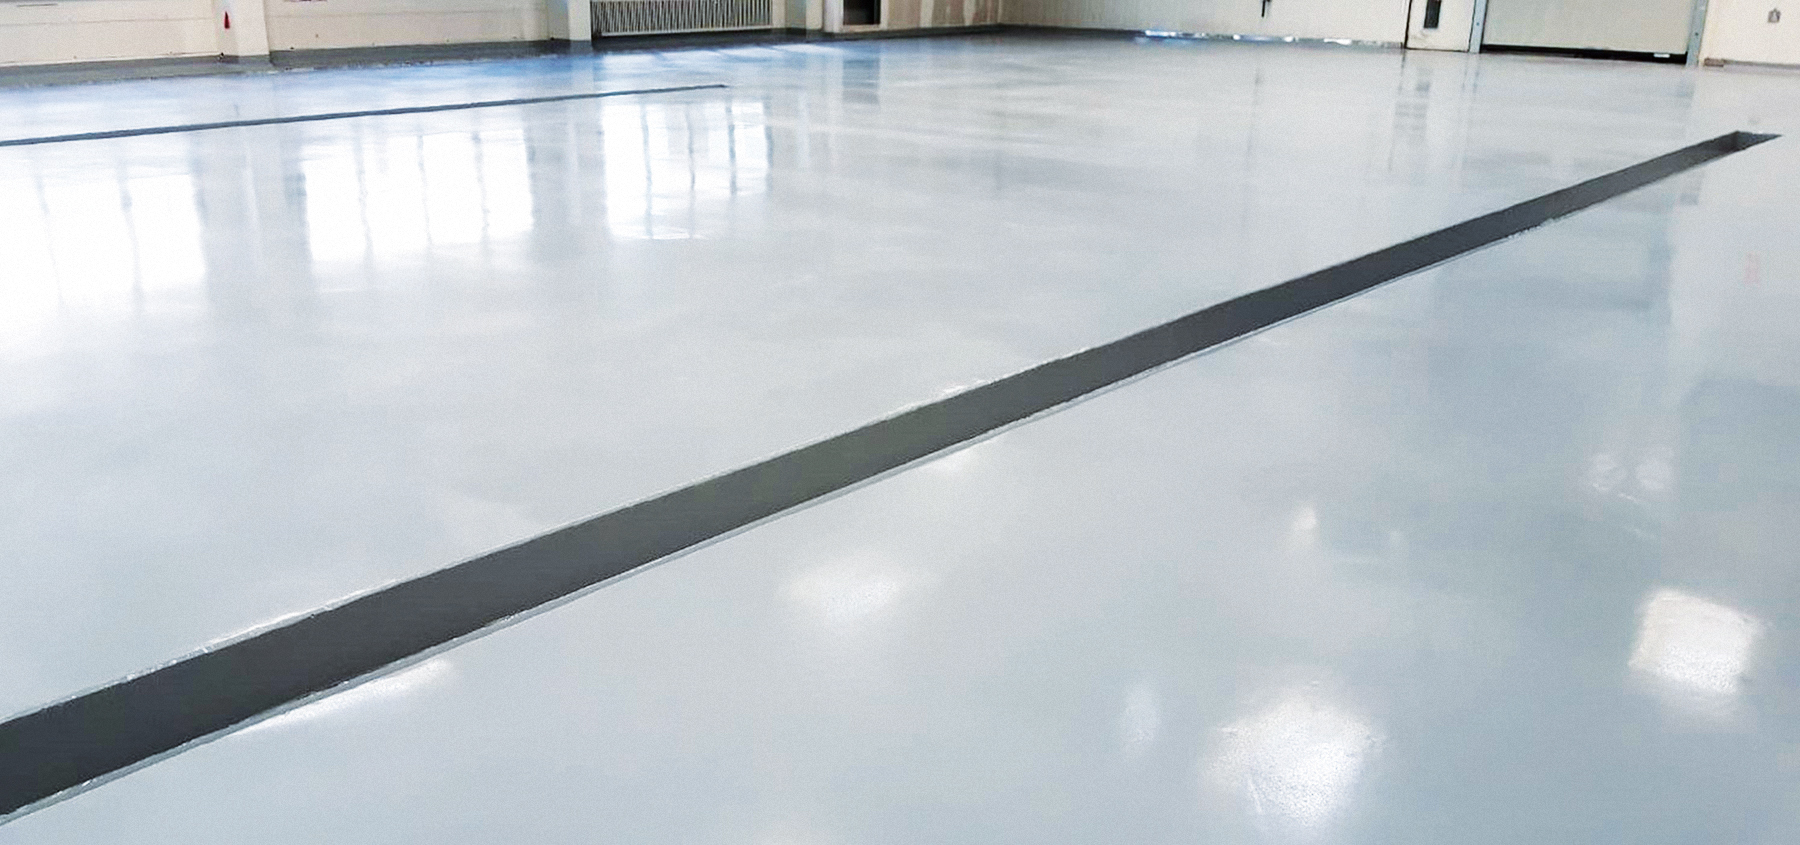 Der neue Industrieboden in der Galvanik-Halle von Weidmüller Interface in Detmold ist grau und mattiert.